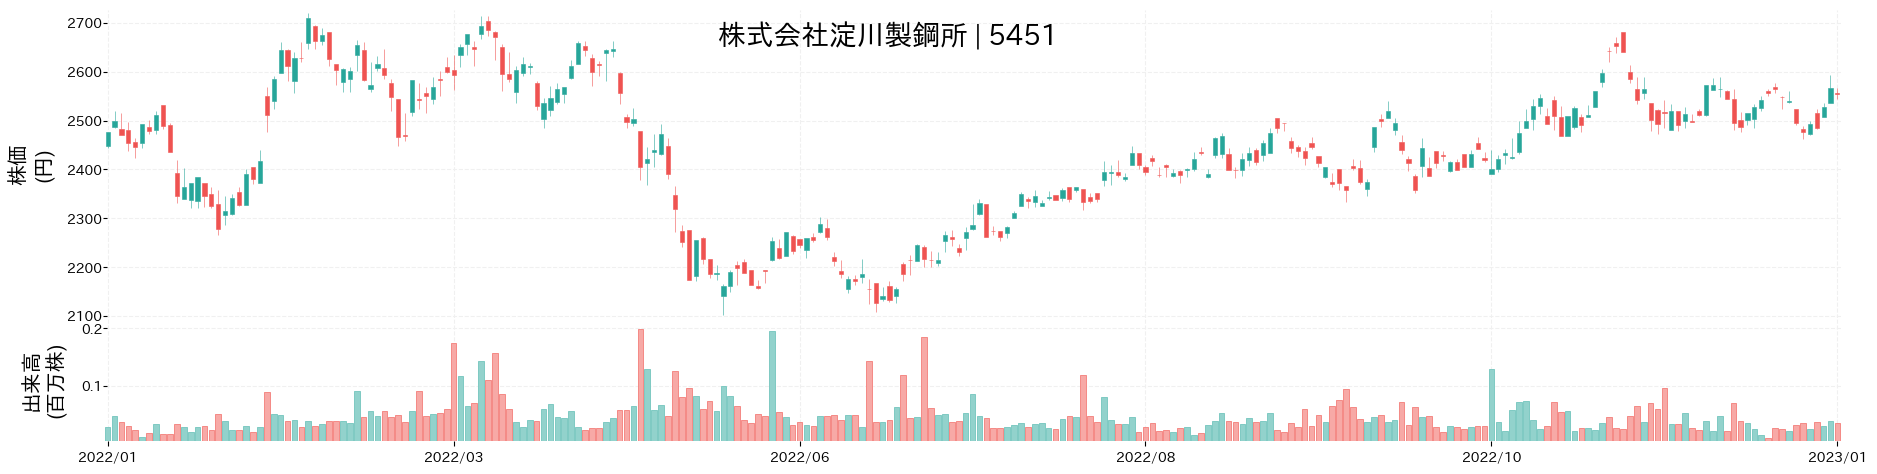 淀川製鋼所の株価推移(2022)